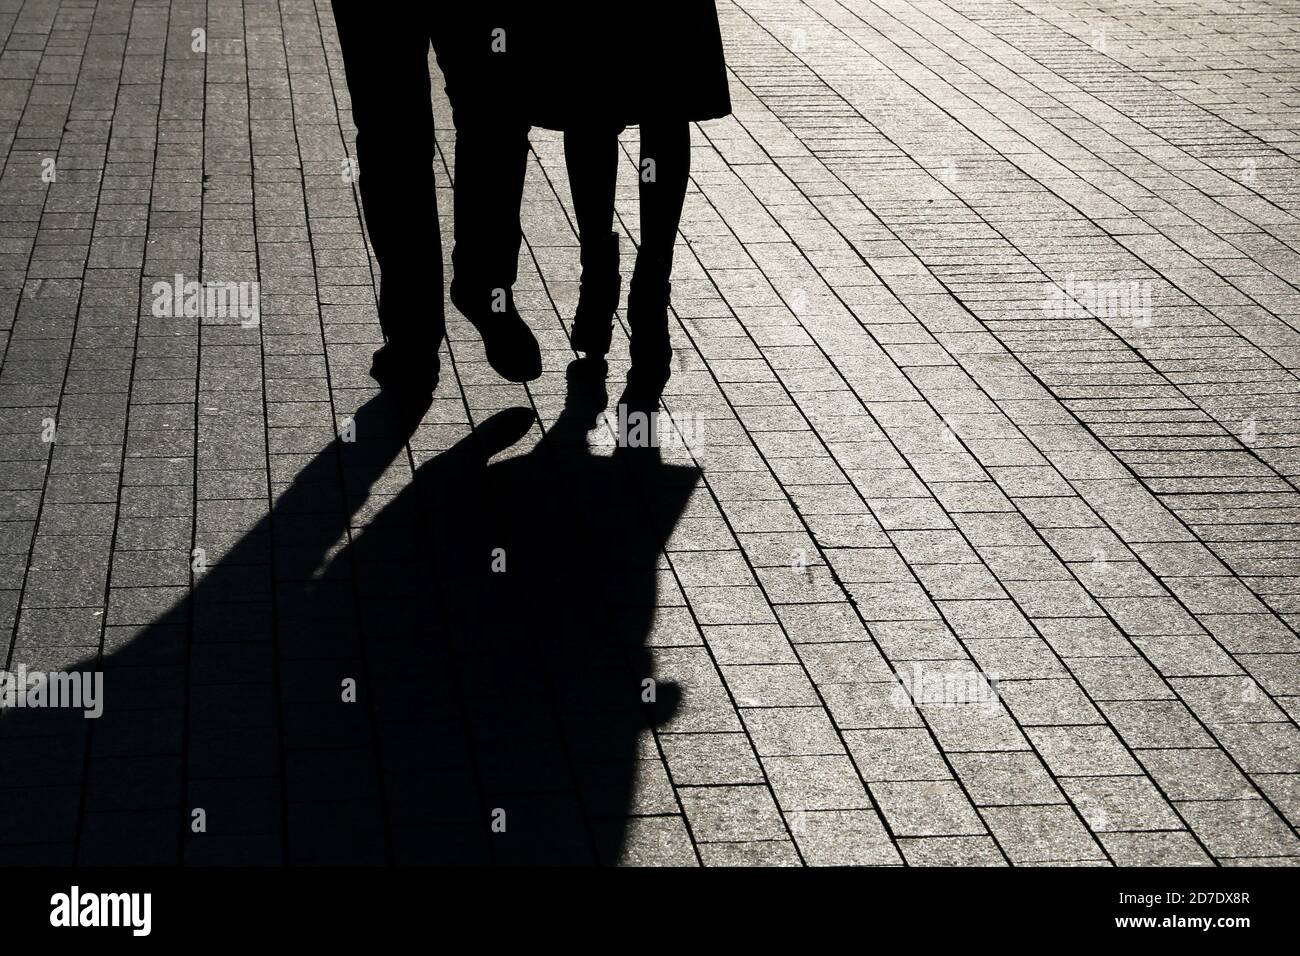 Coppia che cammina lungo la strada, silhouette e ombre di uomo e donna sul marciapiede pedonale. Gambe maschili e femminili, concetto di relazioni Foto Stock